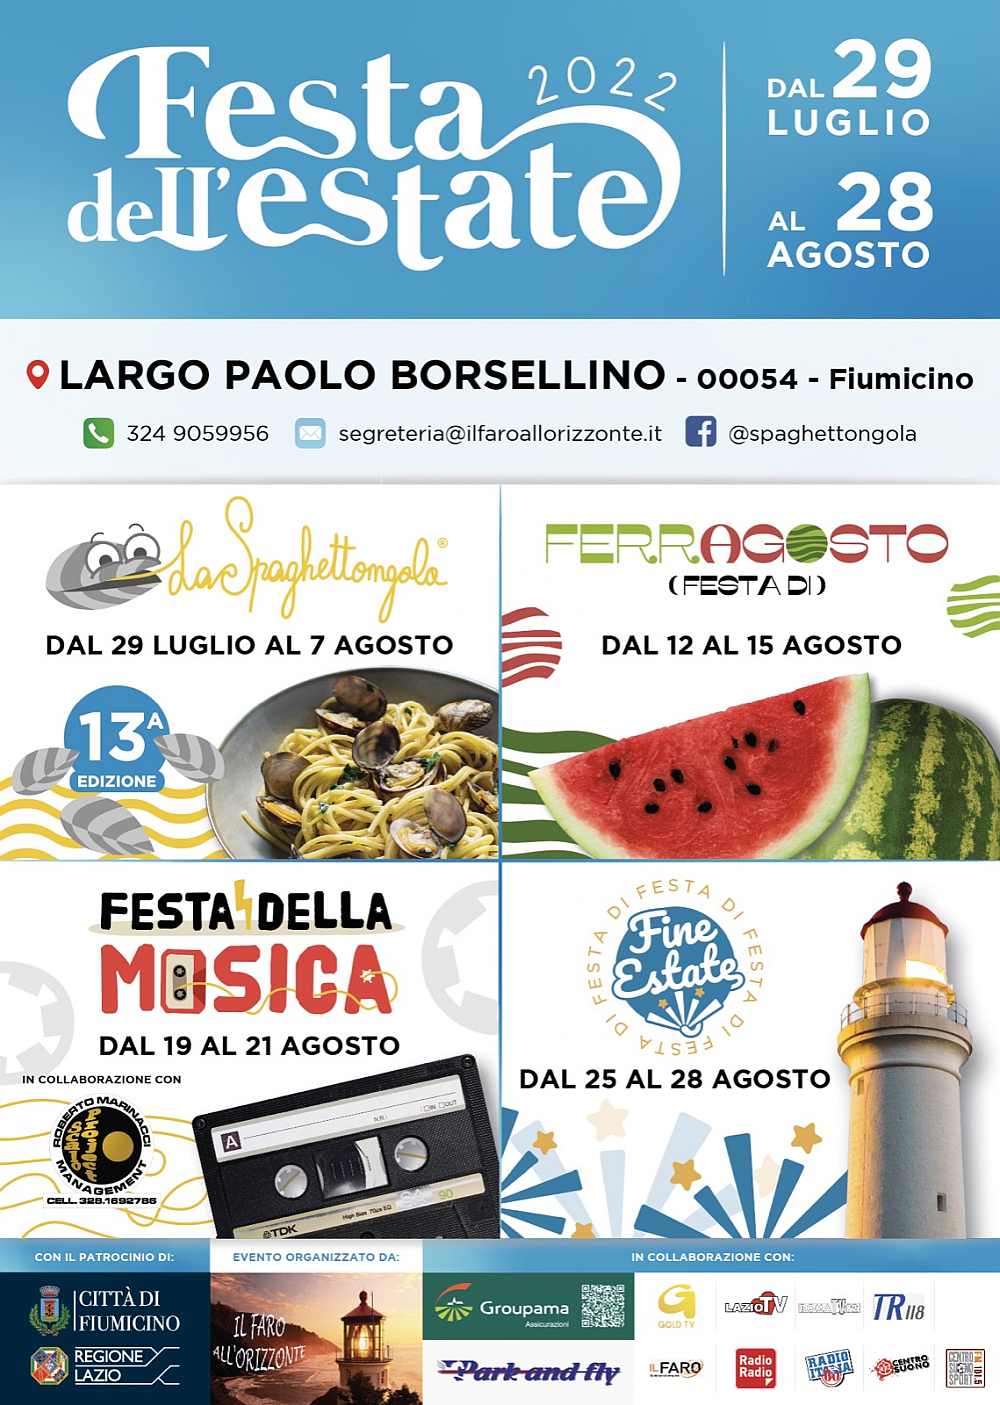 Fiumicino (RM)
"festa dell'estate"
eventi Luglio e Agosto 2022